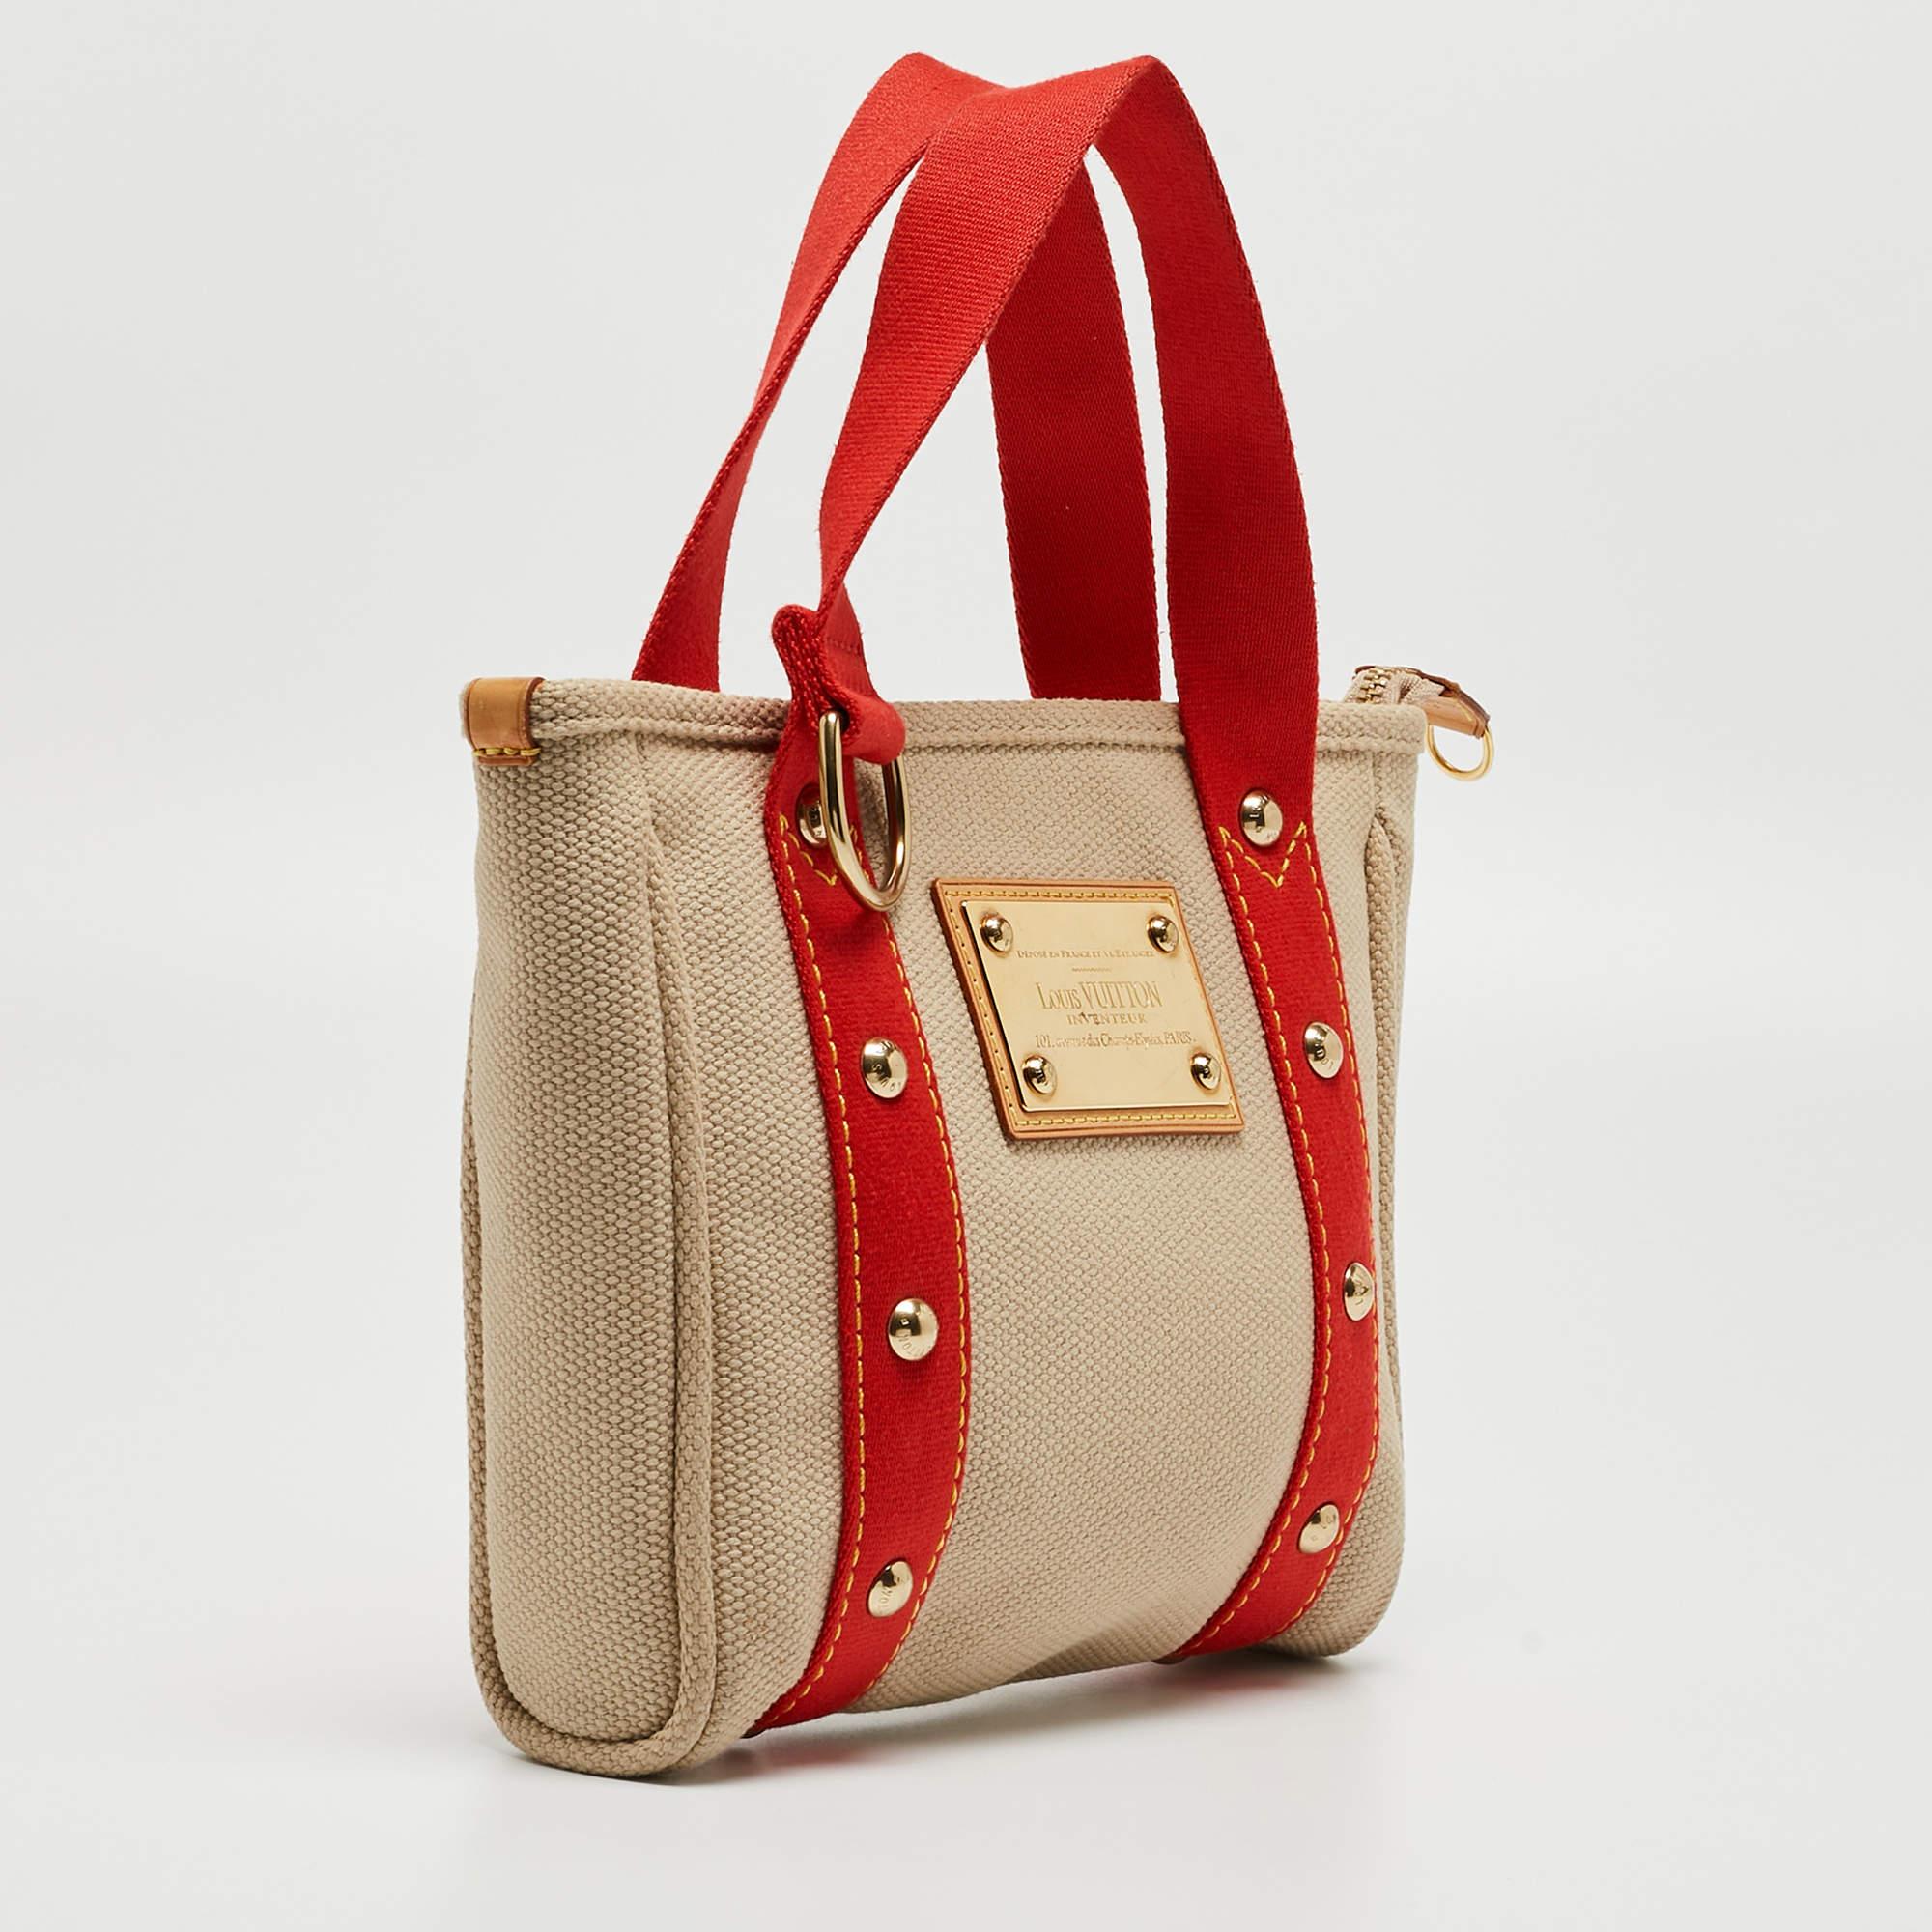 Ce sac durable de Louis Vuitton est facile à transporter et allie style et fonctionnalité. Ajoutez une touche de glam à votre look avec ce sac beige et rouge. Fabriquée en toile, cette pièce amusante est parfaite pour la fashionista.

